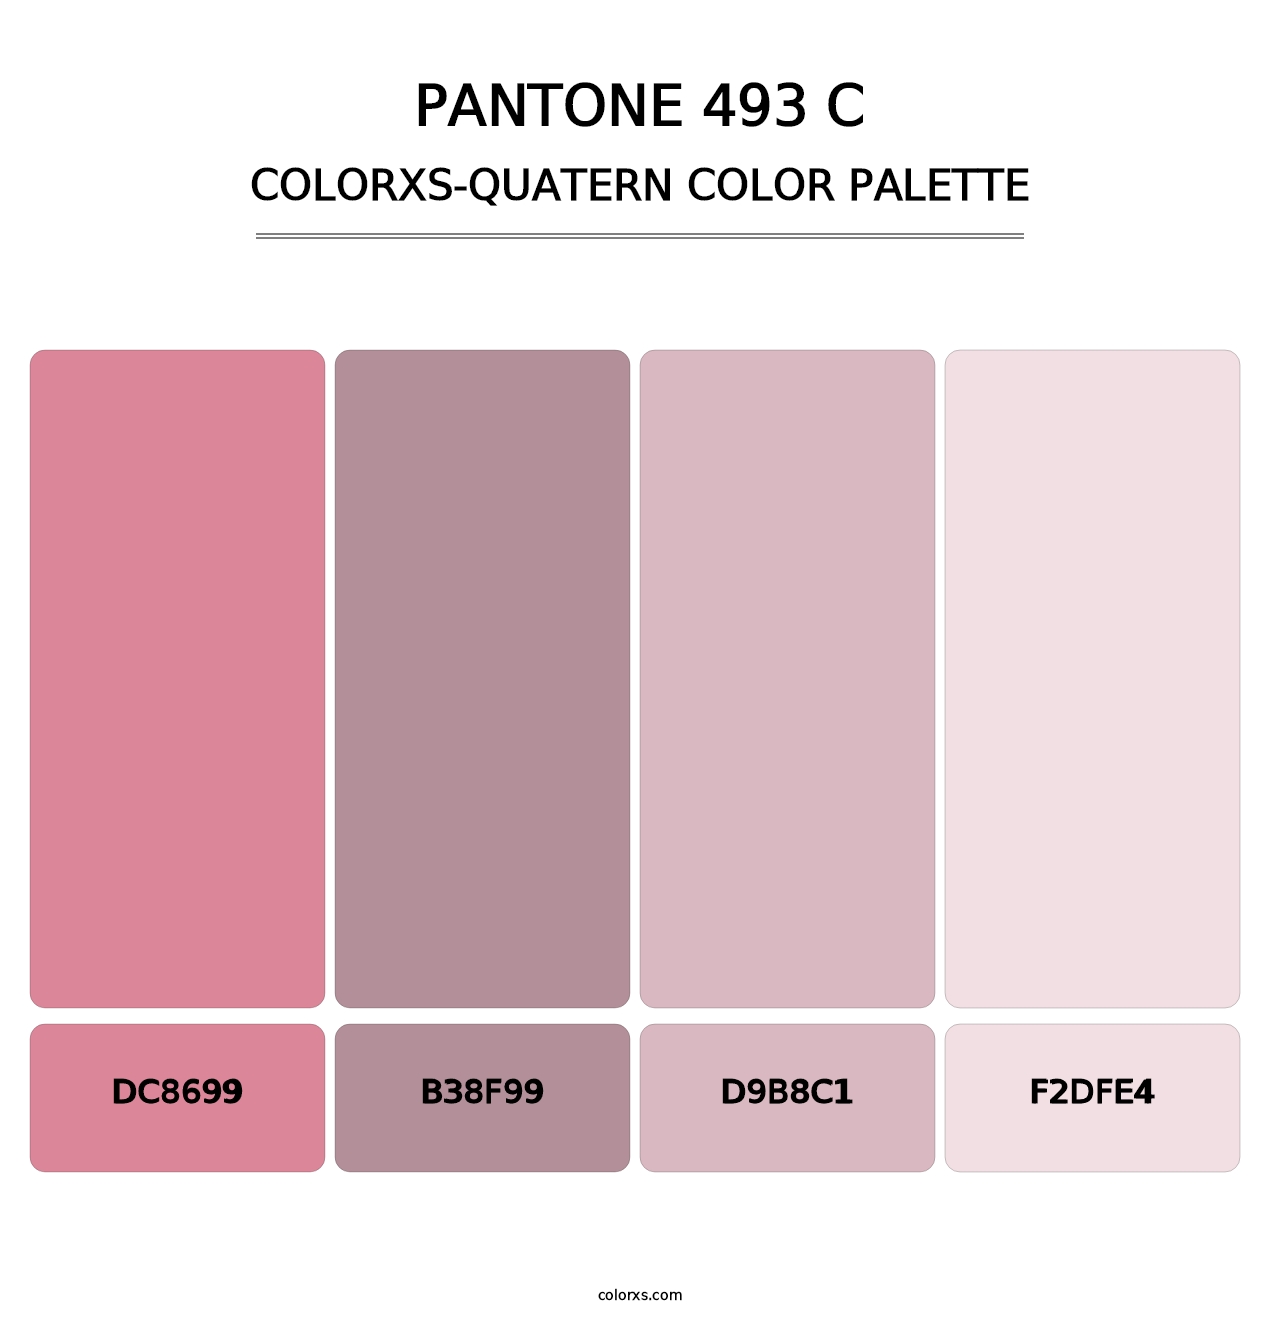 PANTONE 493 C - Colorxs Quatern Palette